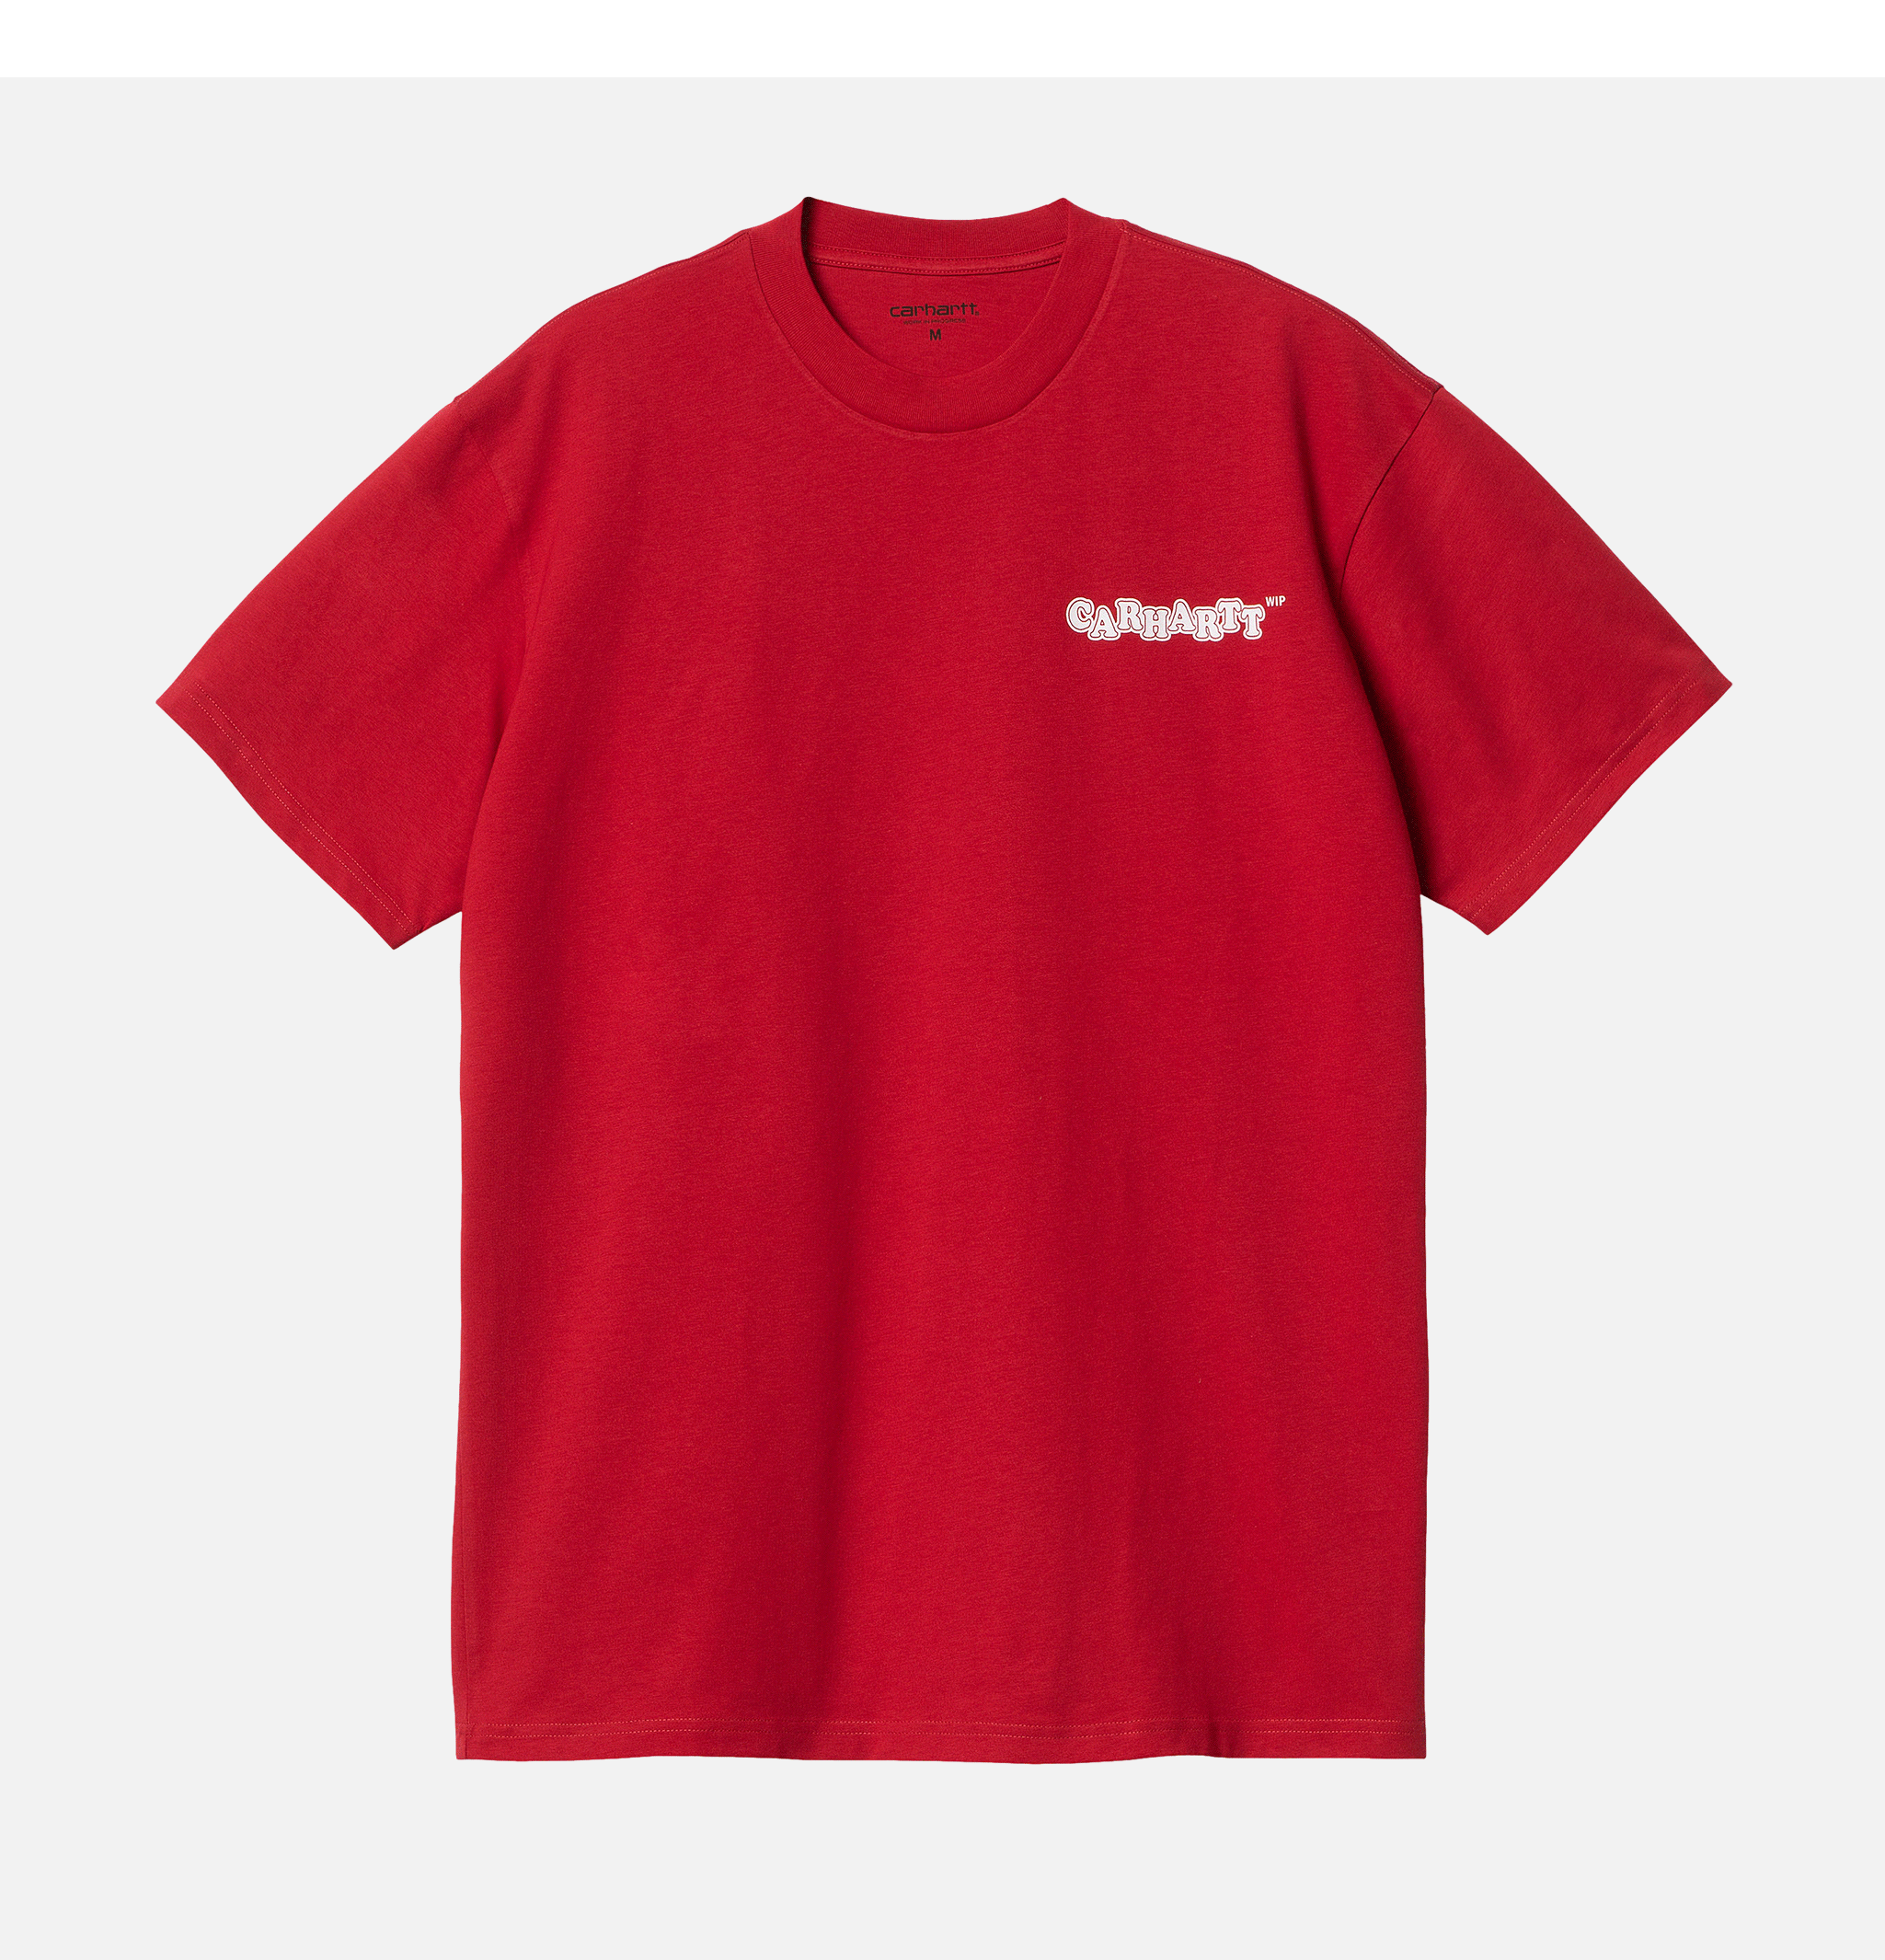 Carhartt WIP T-shirt Fast Food Samba Red